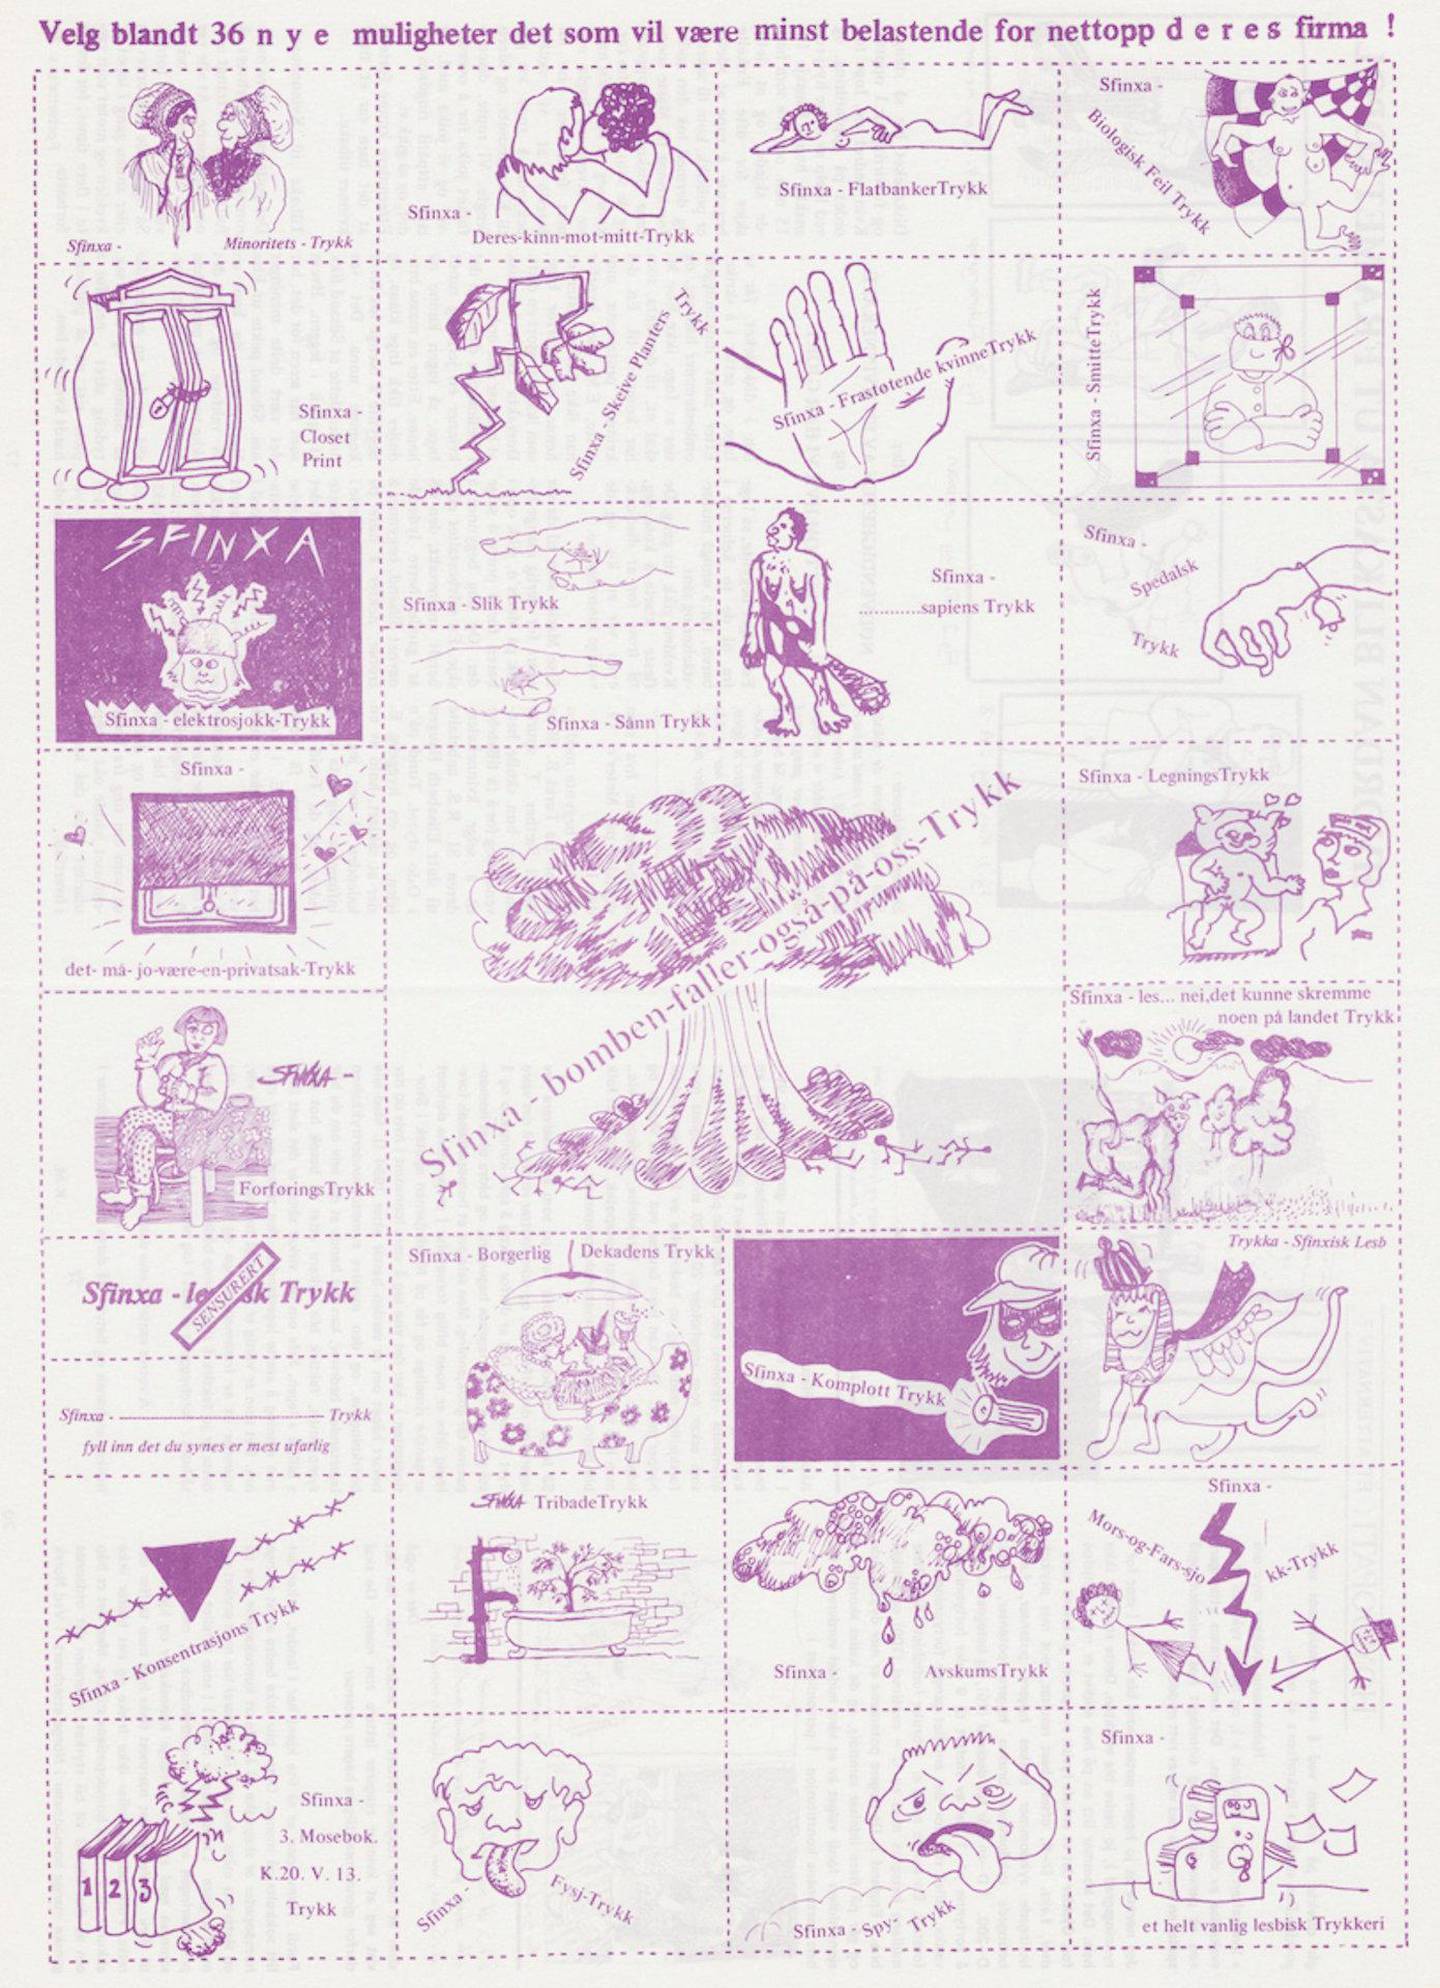 En plansje fra Kvinnenettverkets opprinnelige trykkeri «Sfinxa – Lesbisk trykk».